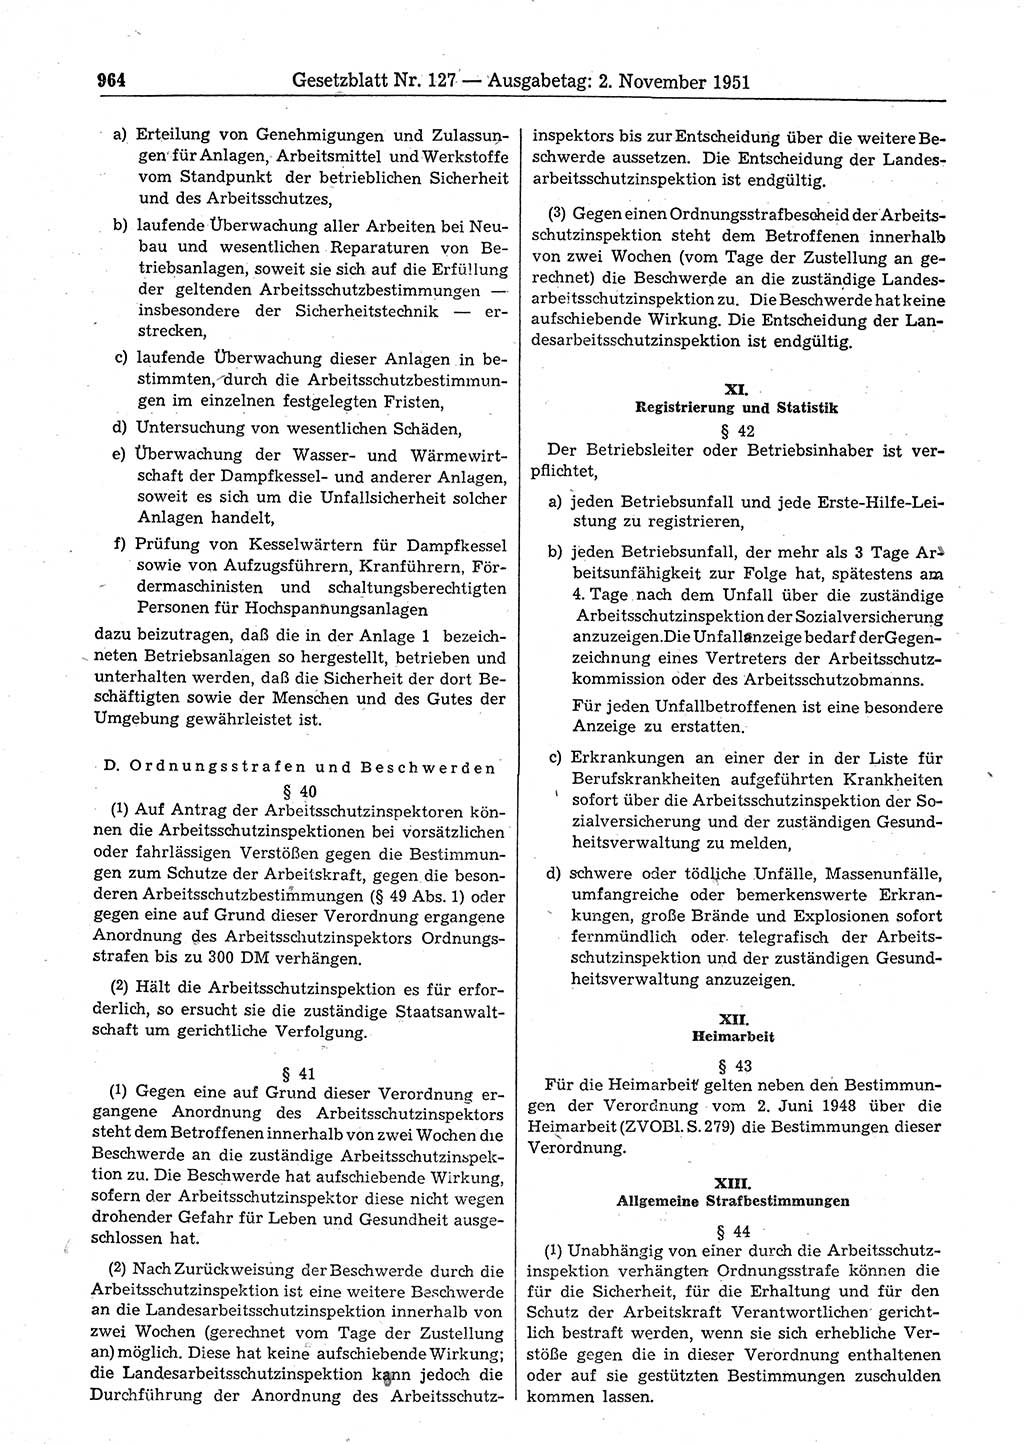 Gesetzblatt (GBl.) der Deutschen Demokratischen Republik (DDR) 1951, Seite 964 (GBl. DDR 1951, S. 964)